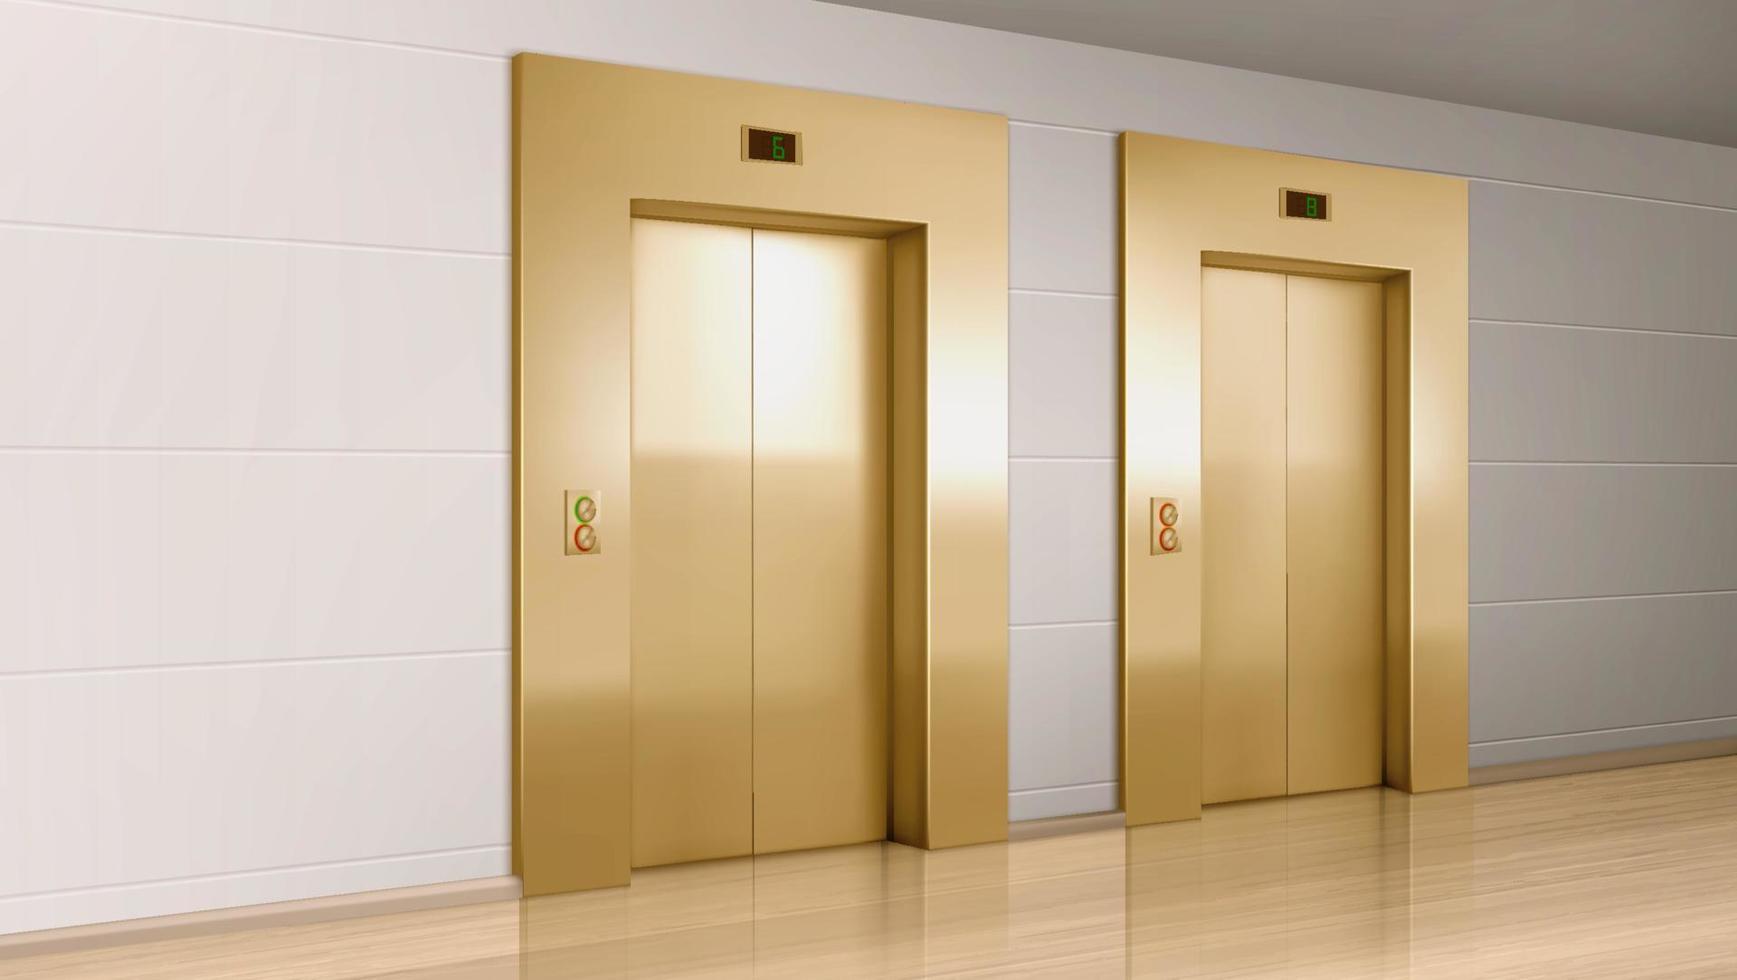 metallo ascensore porte nel moderno ufficio corridoio vettore